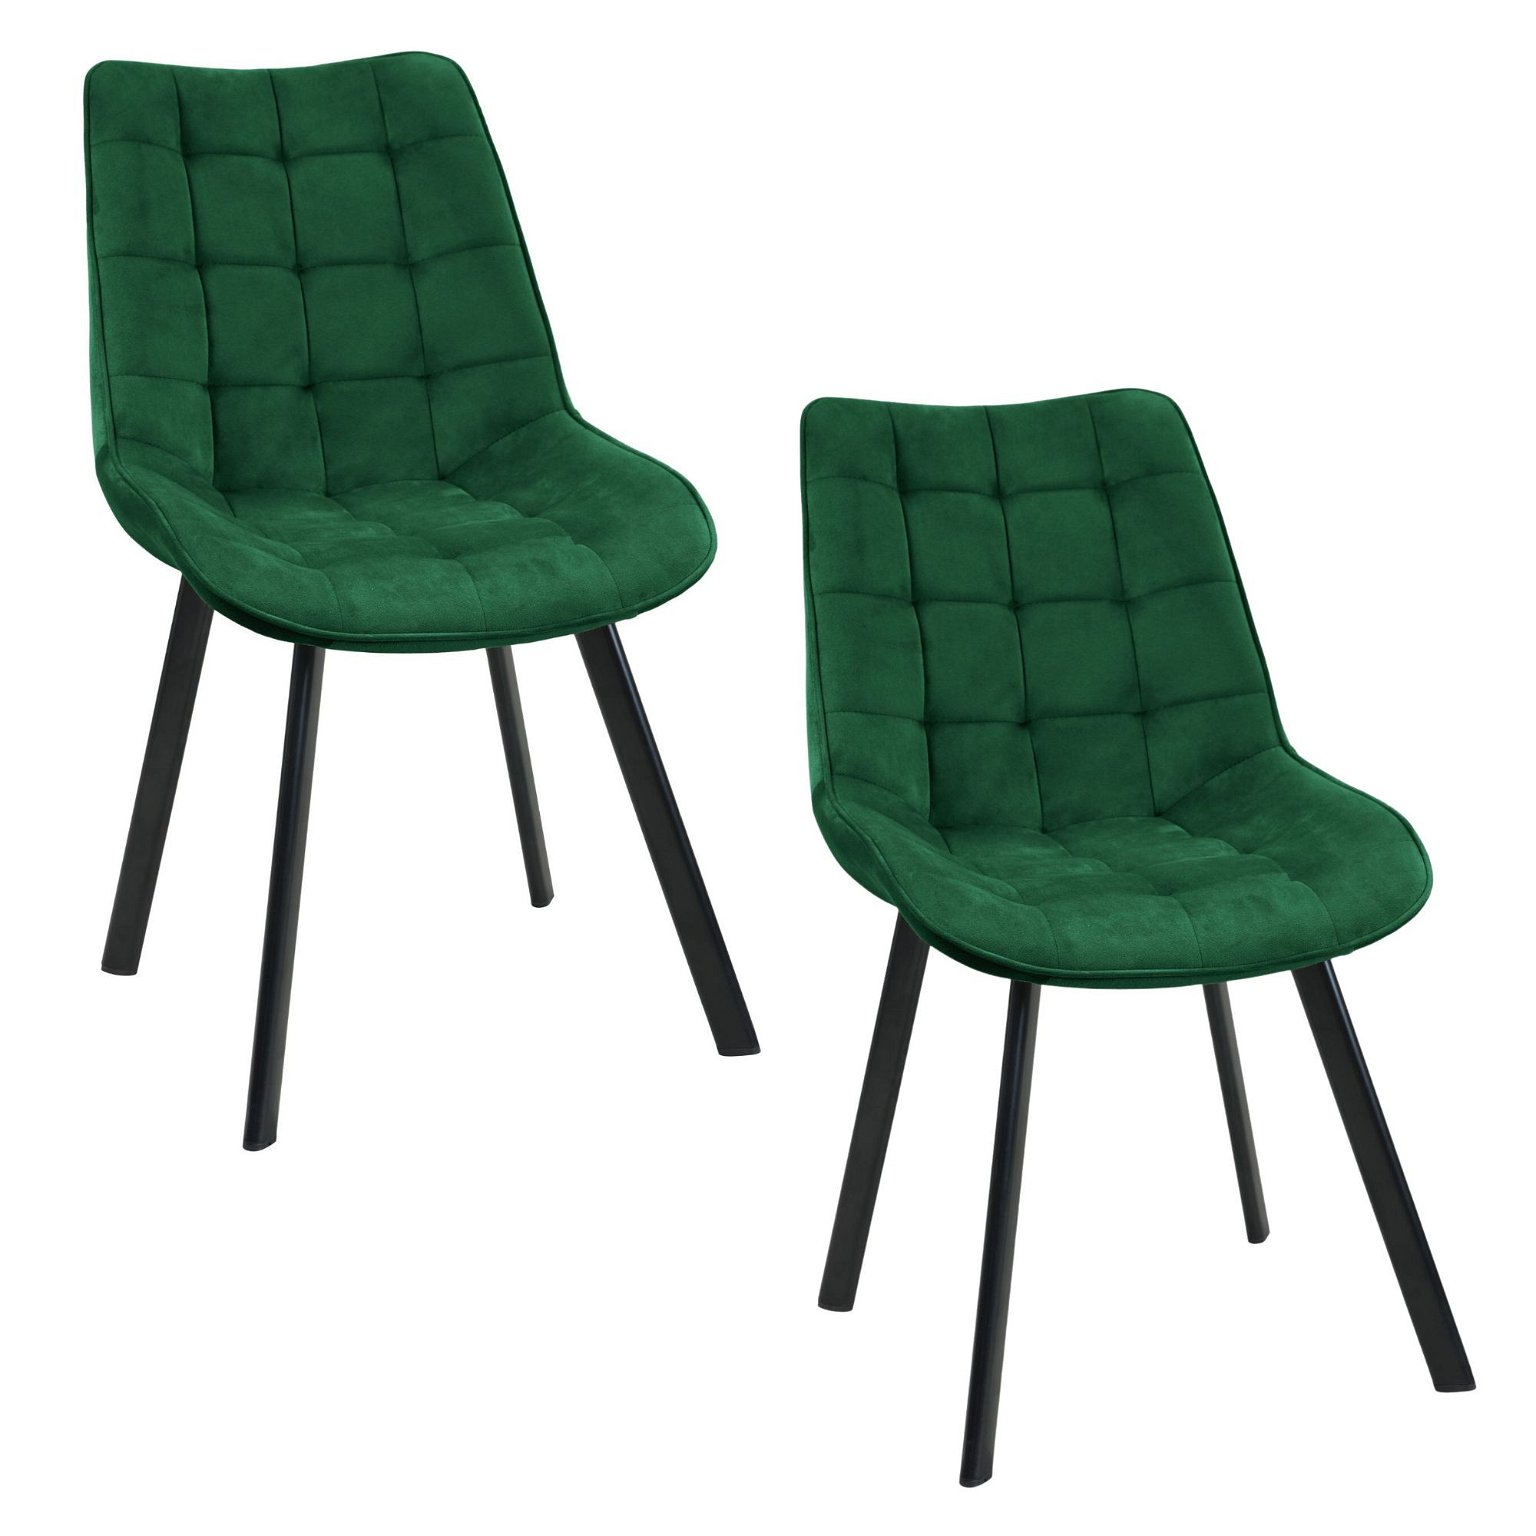 2-jų kėdžių komplektas SJ.22, žalia